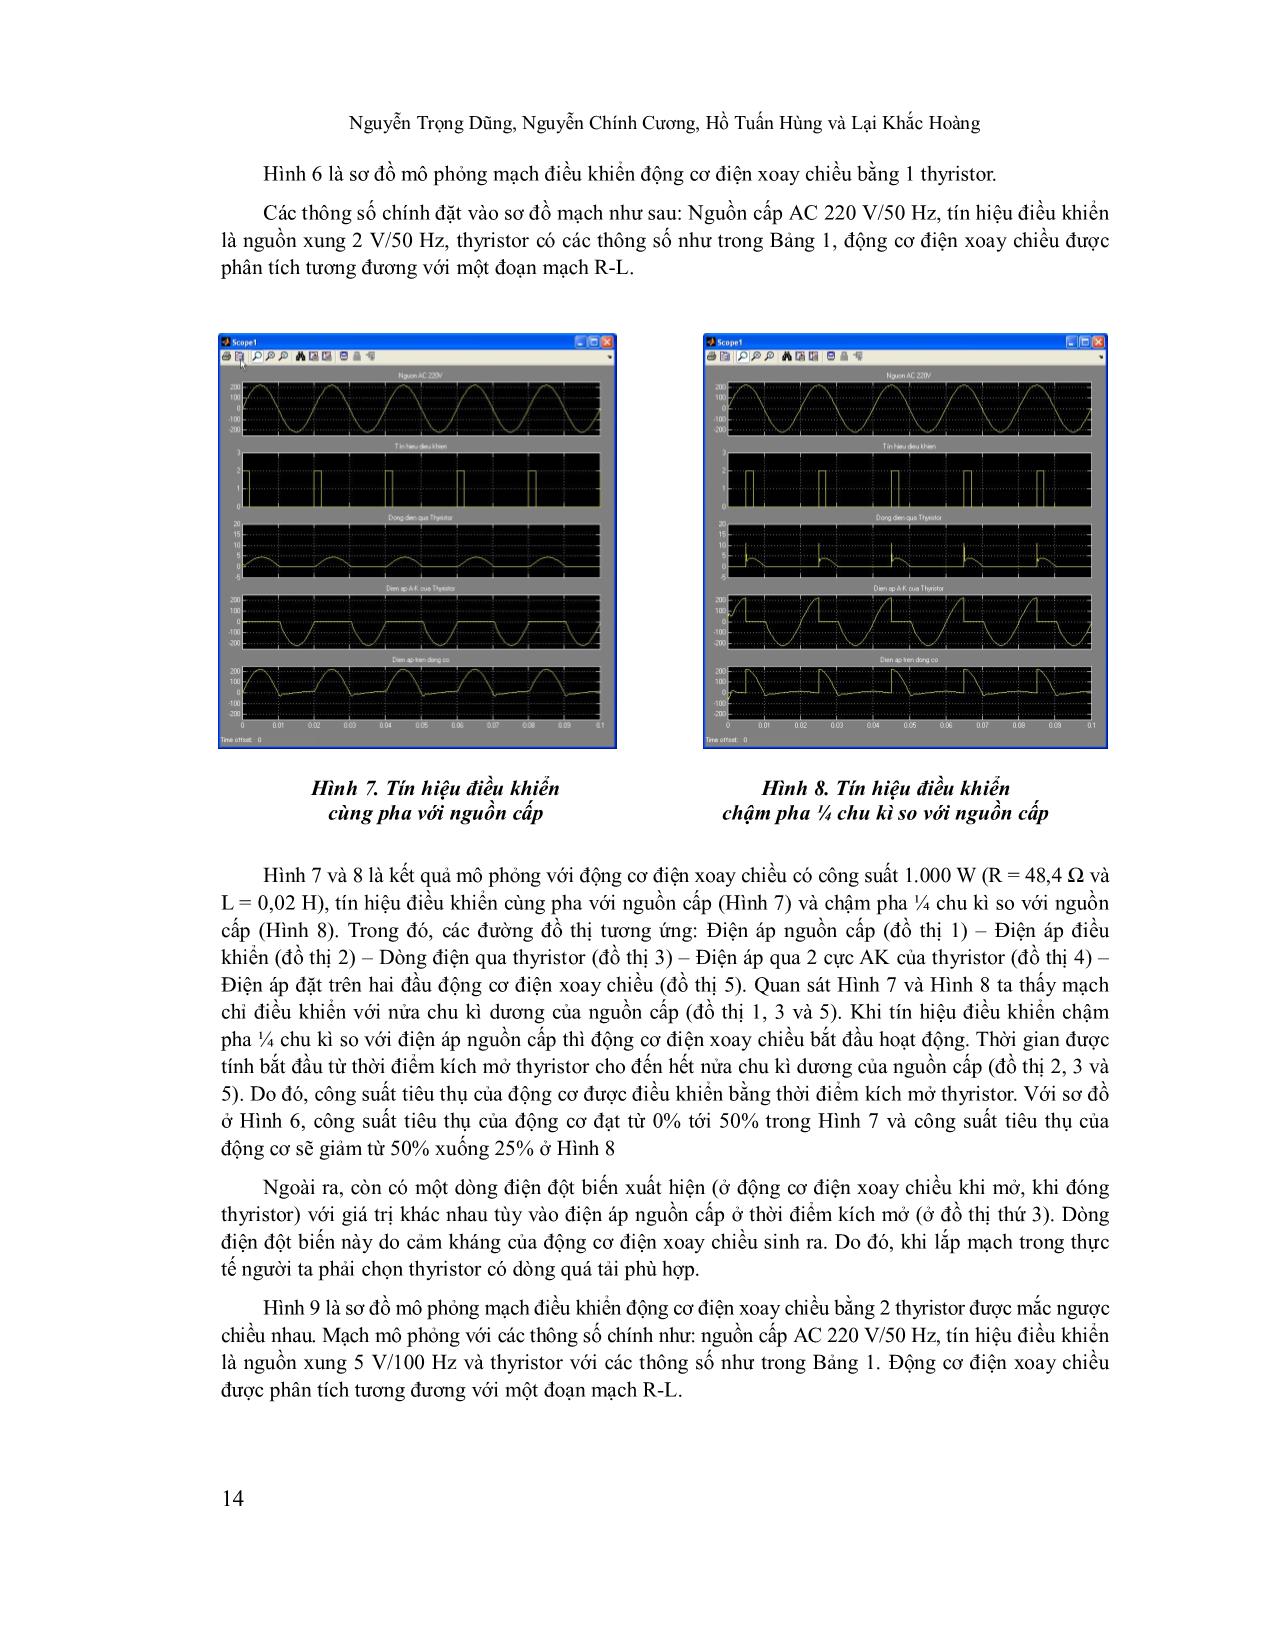 Mô phỏng ứng dụng thyristor trong điều khiển động cơ điện xoay chiều trang 6